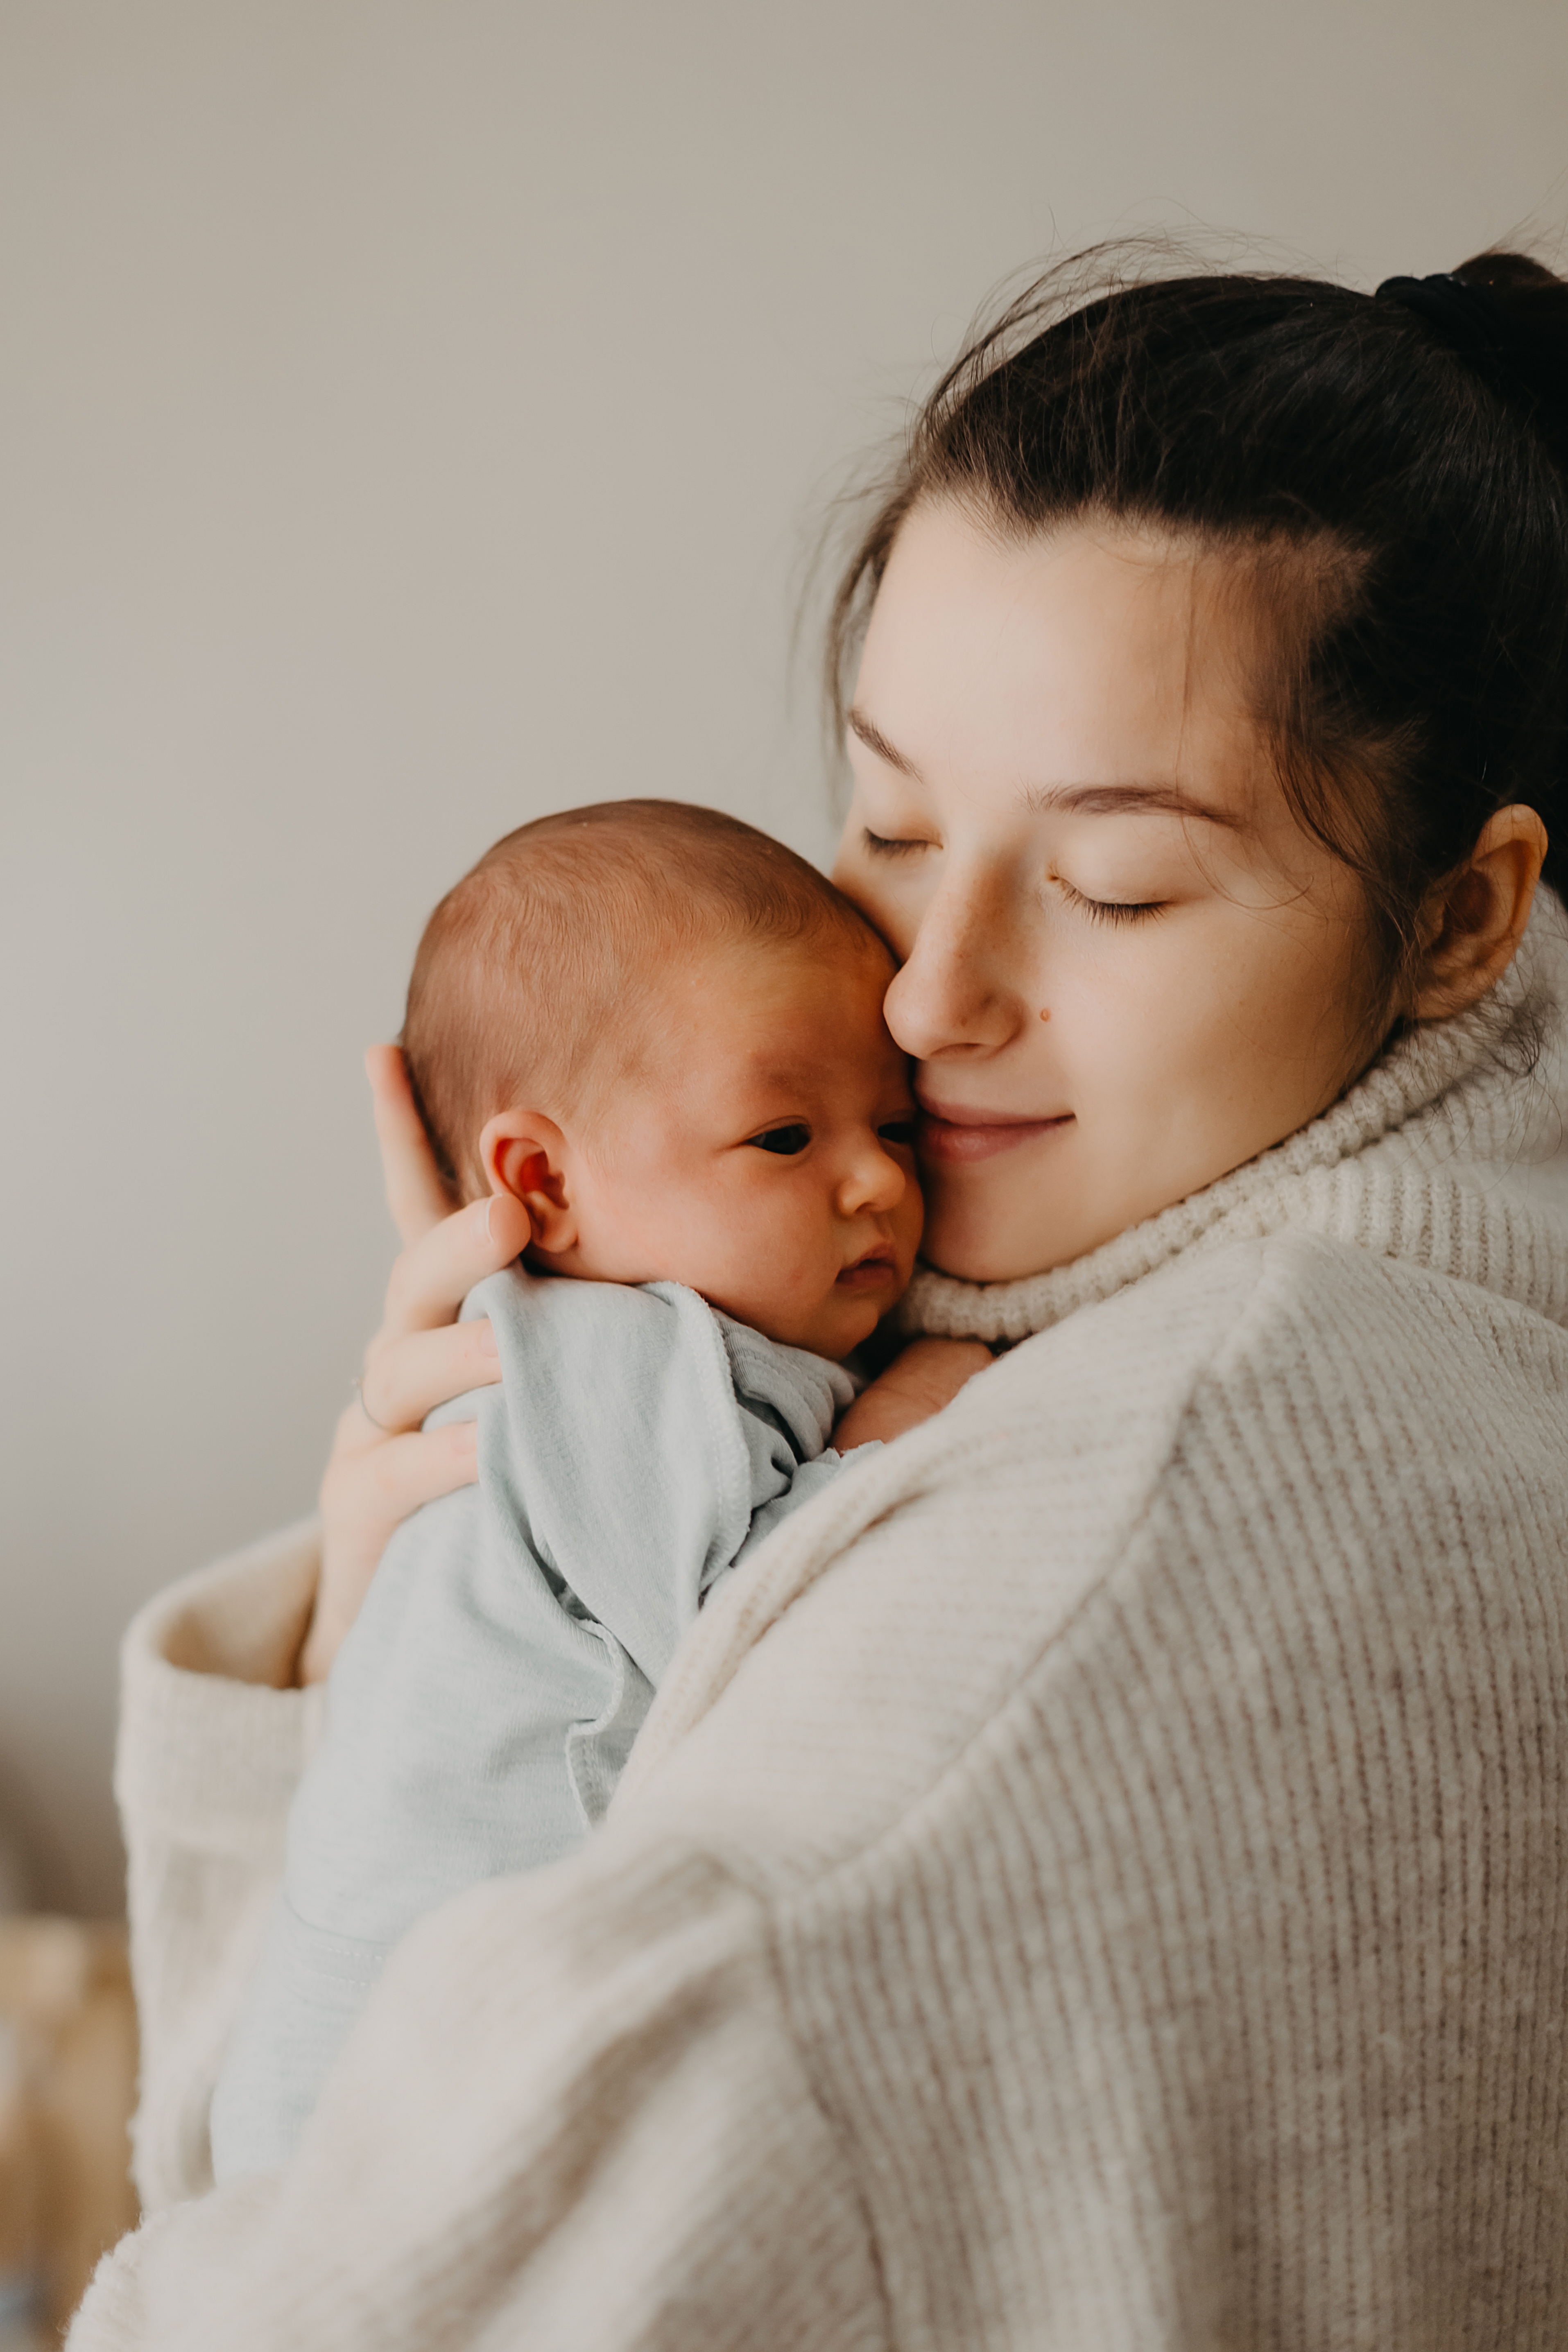 Eine Mutter mit ihrem Baby | Quelle: Shutterstock